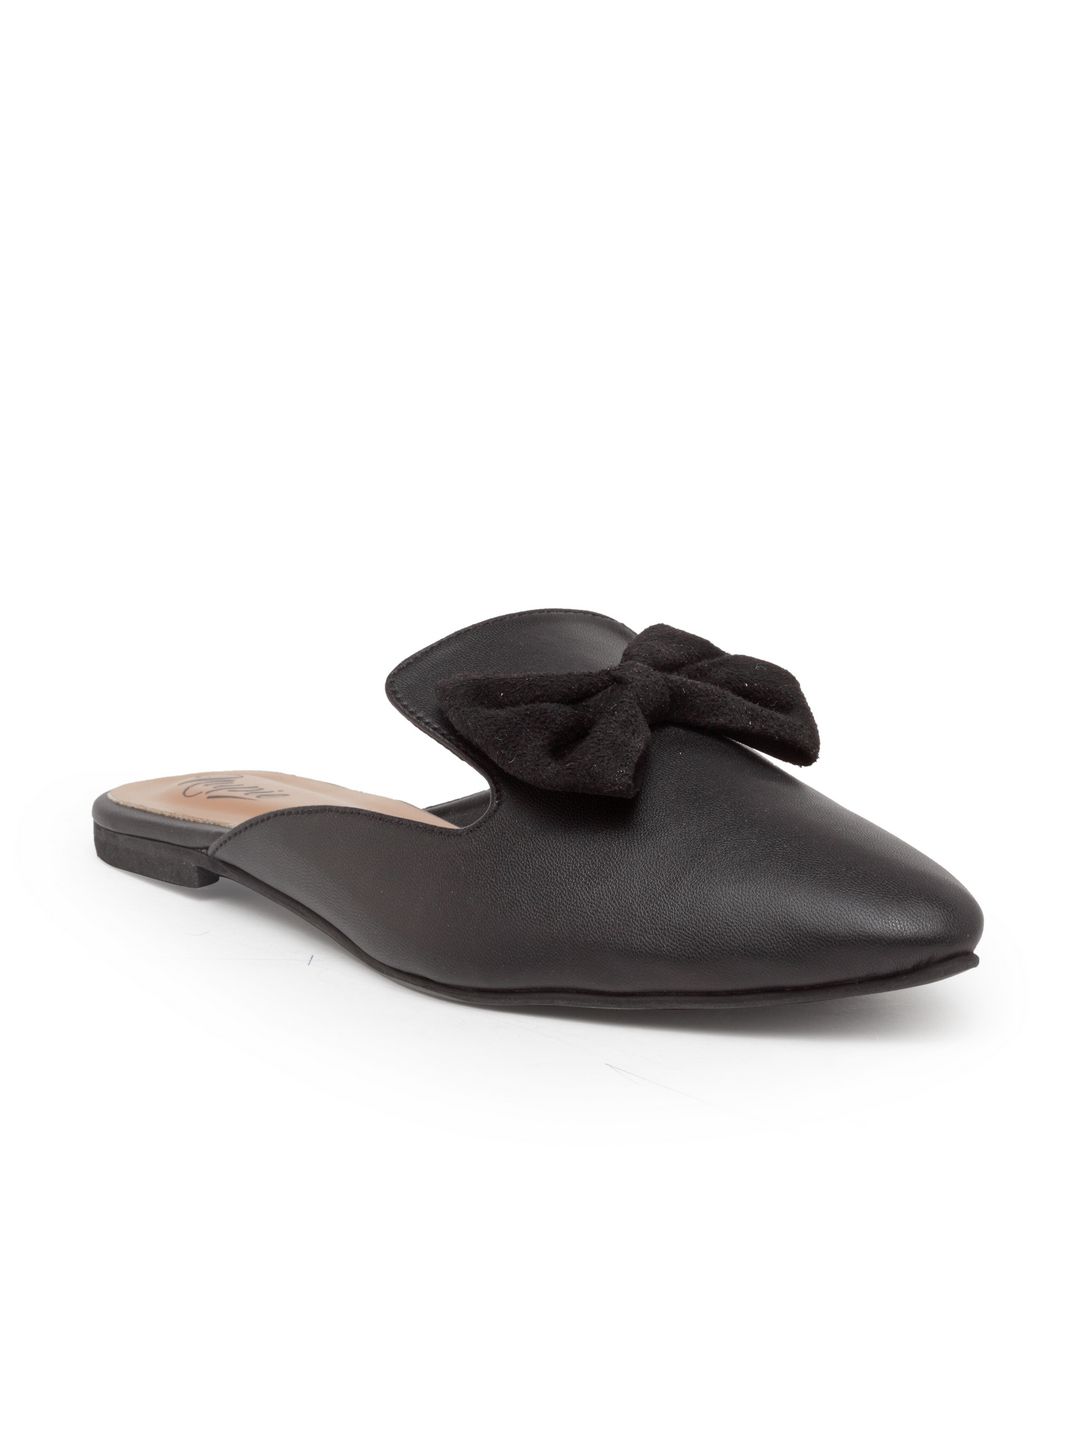     			Nupie Black Mules Flat Slip-on & Sandal